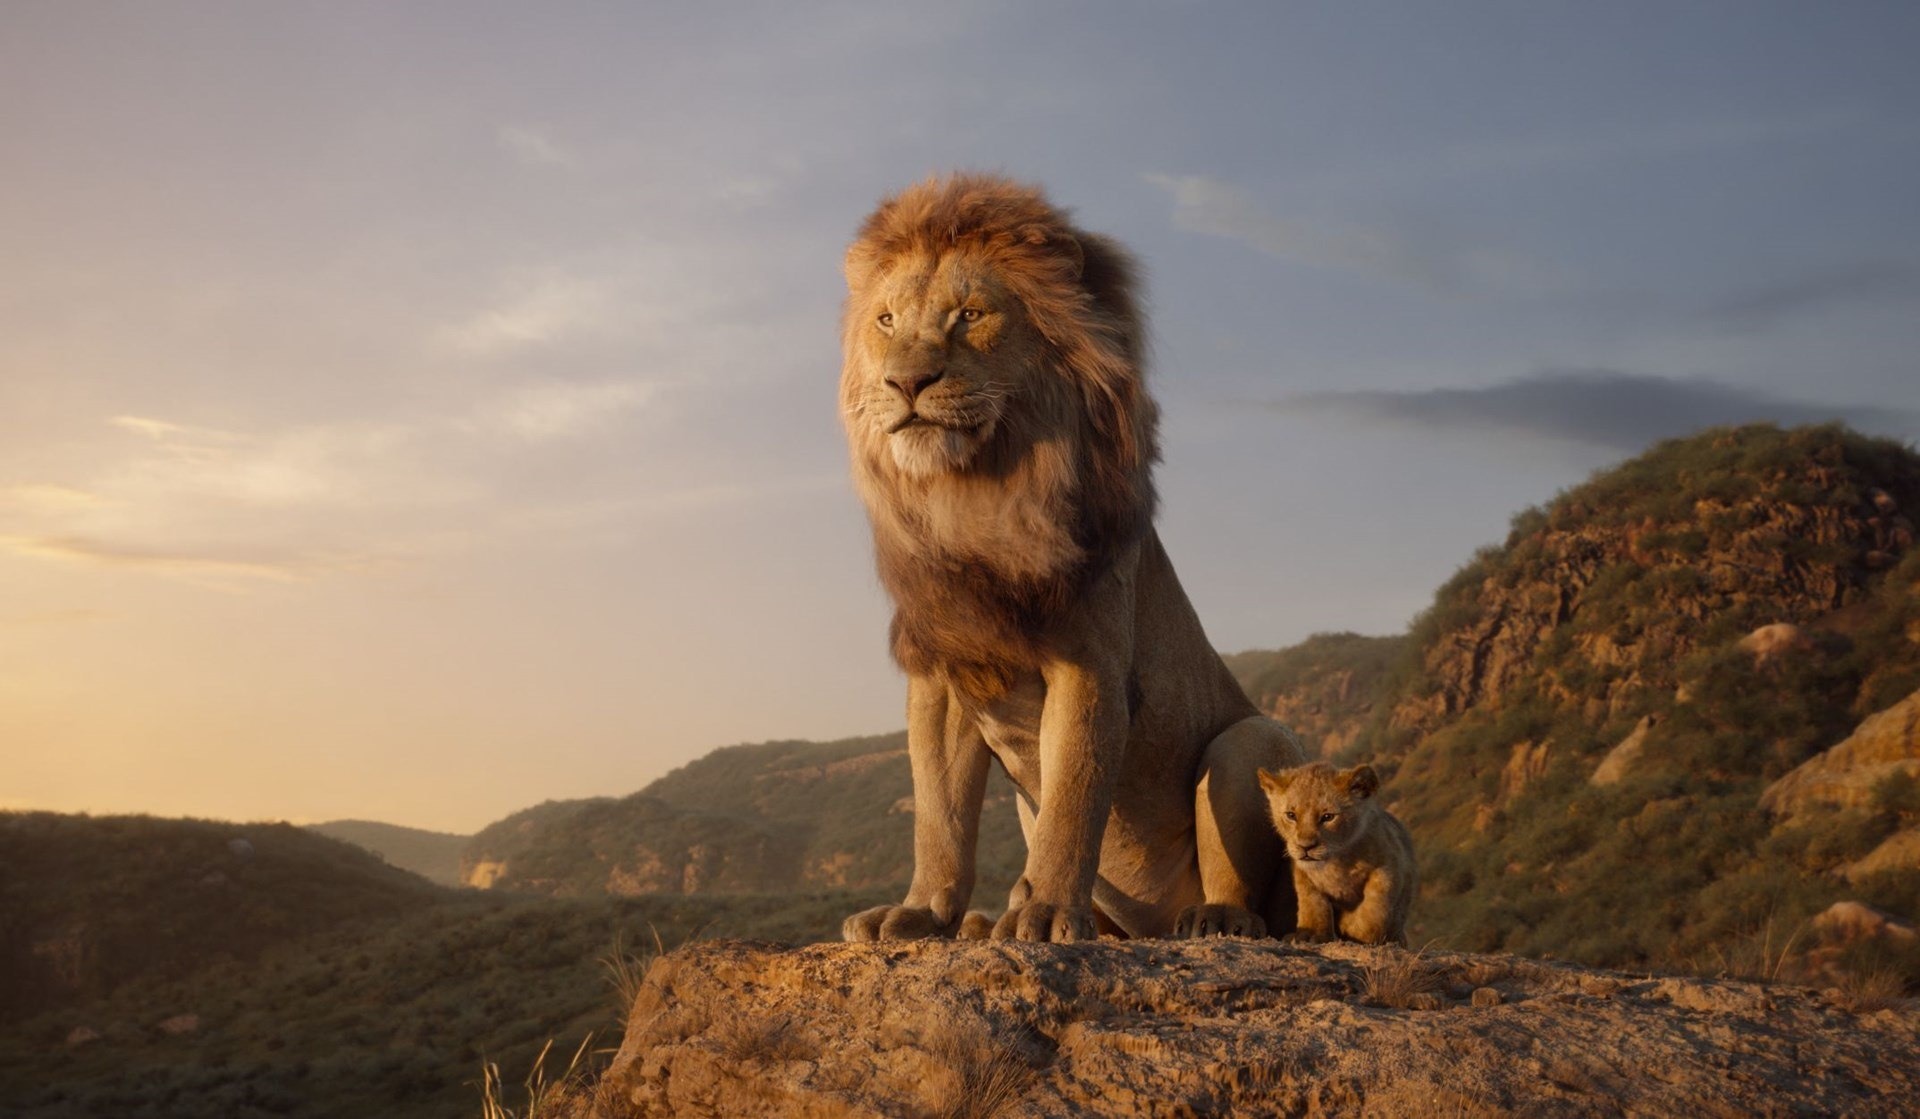 O Rei Leão (2019)